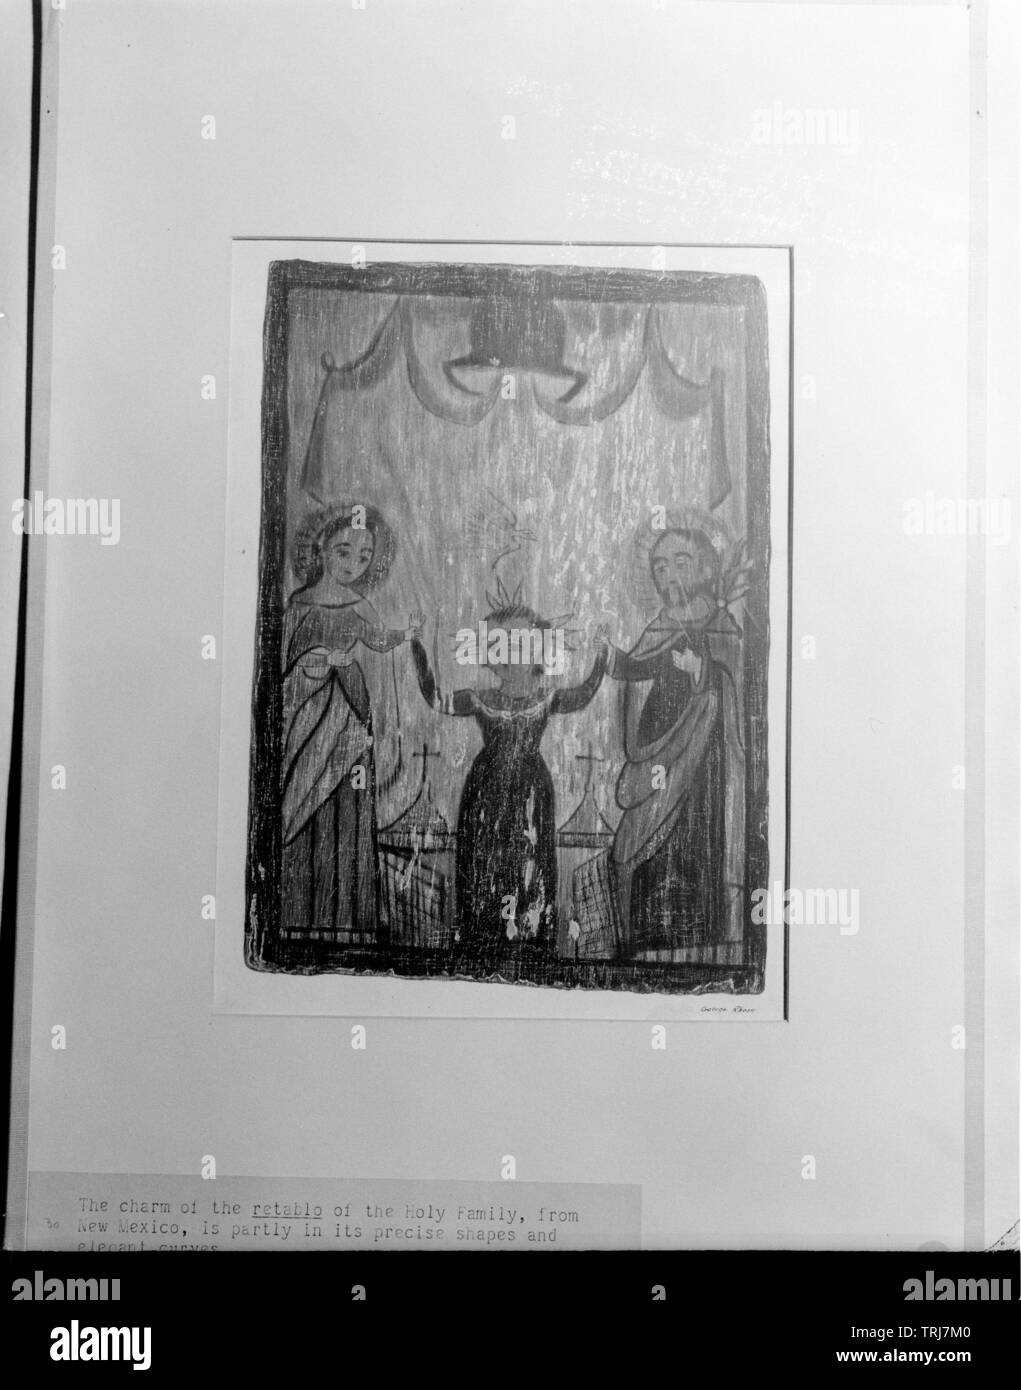 Sainte Famille, peinture sur des tablettes dans le Nouveau Mexique. Jésus debout entre Marie et Joseph, Additional-Rights Clearance-Info-Not-Available- Banque D'Images